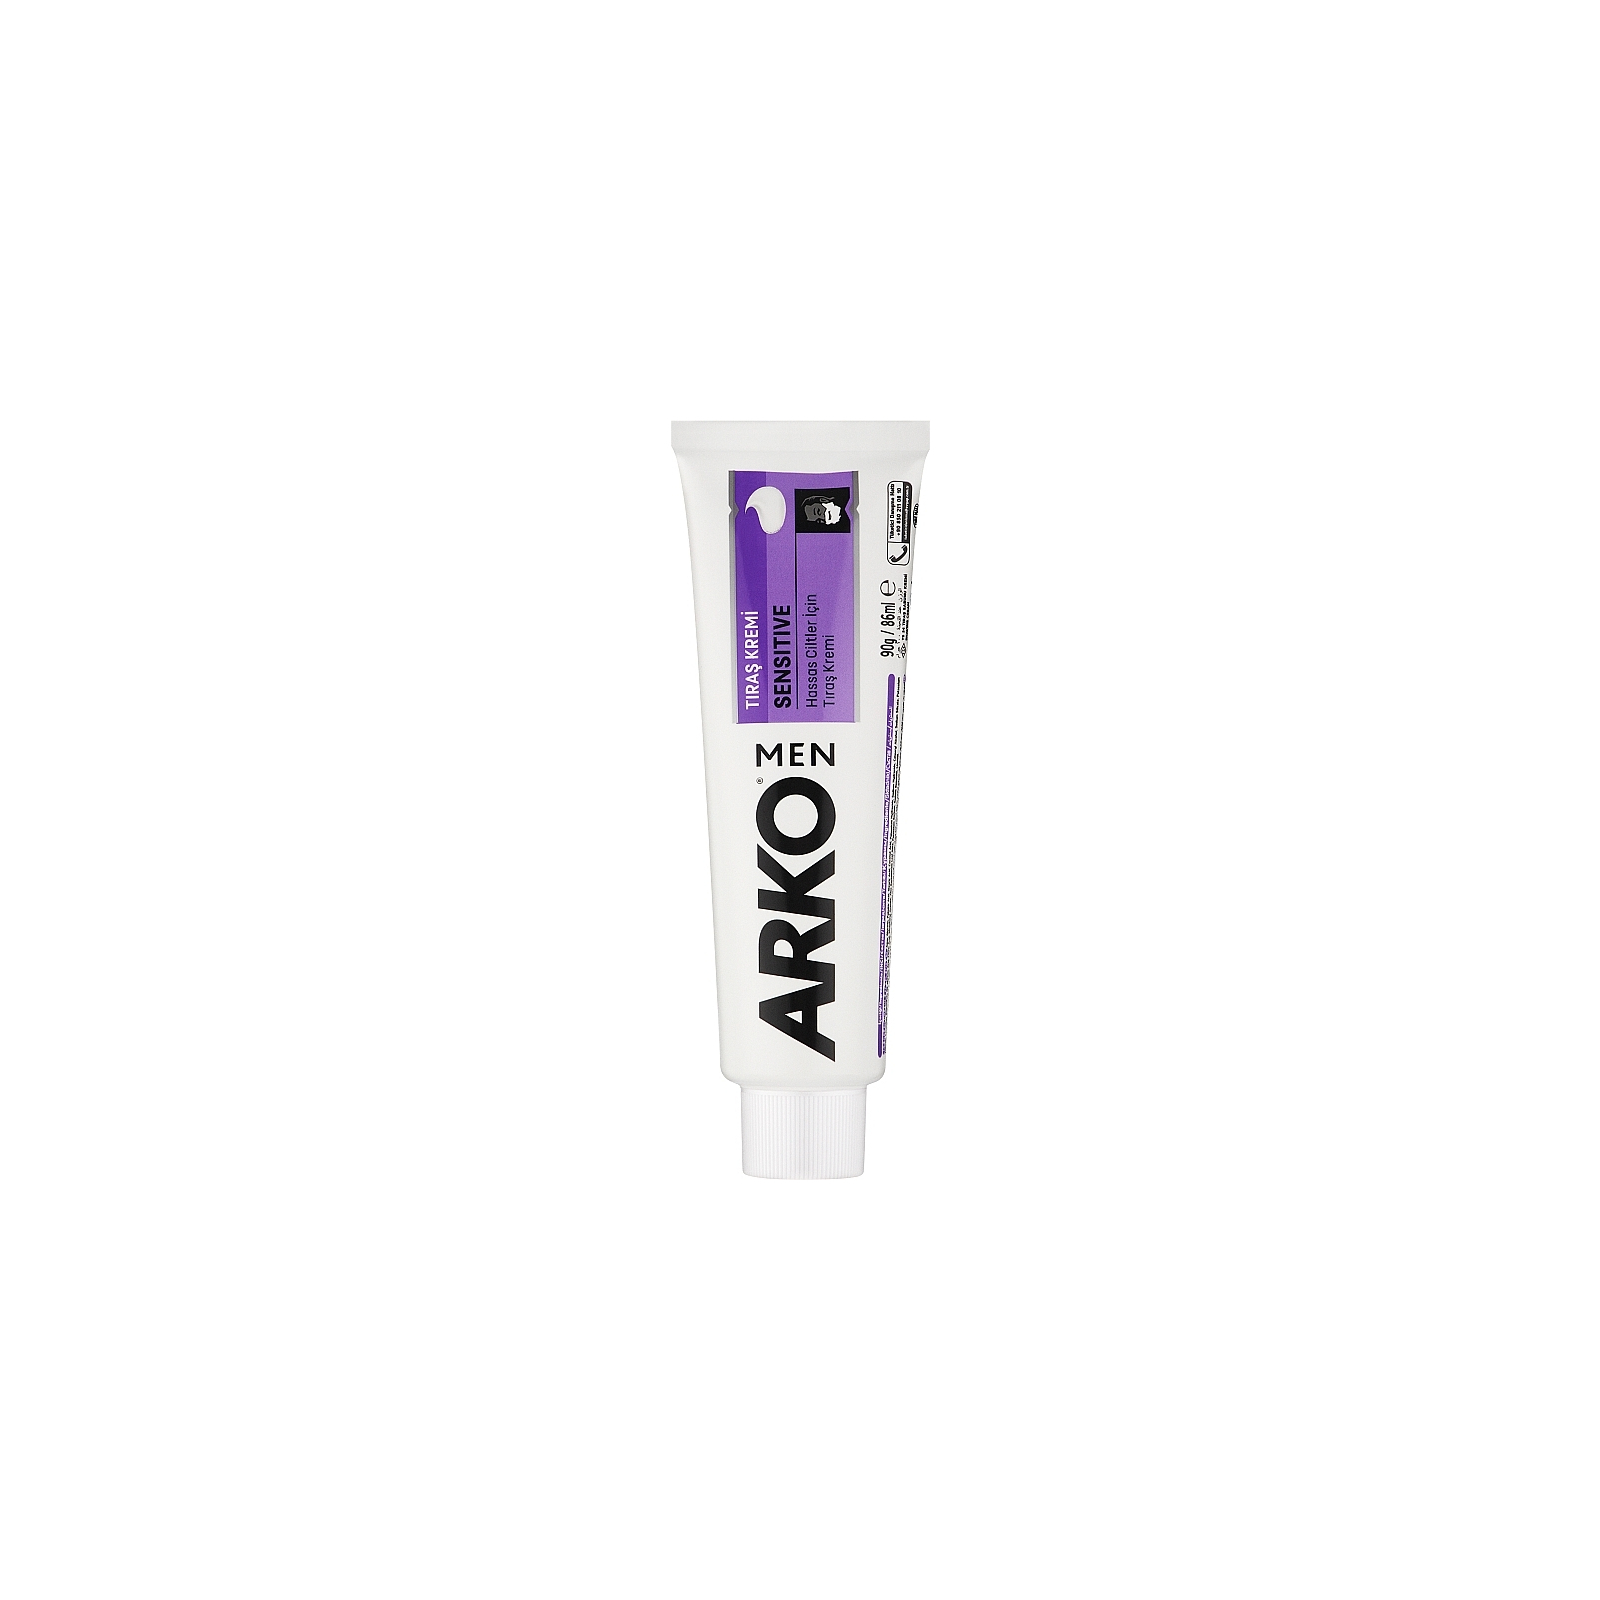 Крем для бритья ARKO Sensitive 65 мл (8690506094515)